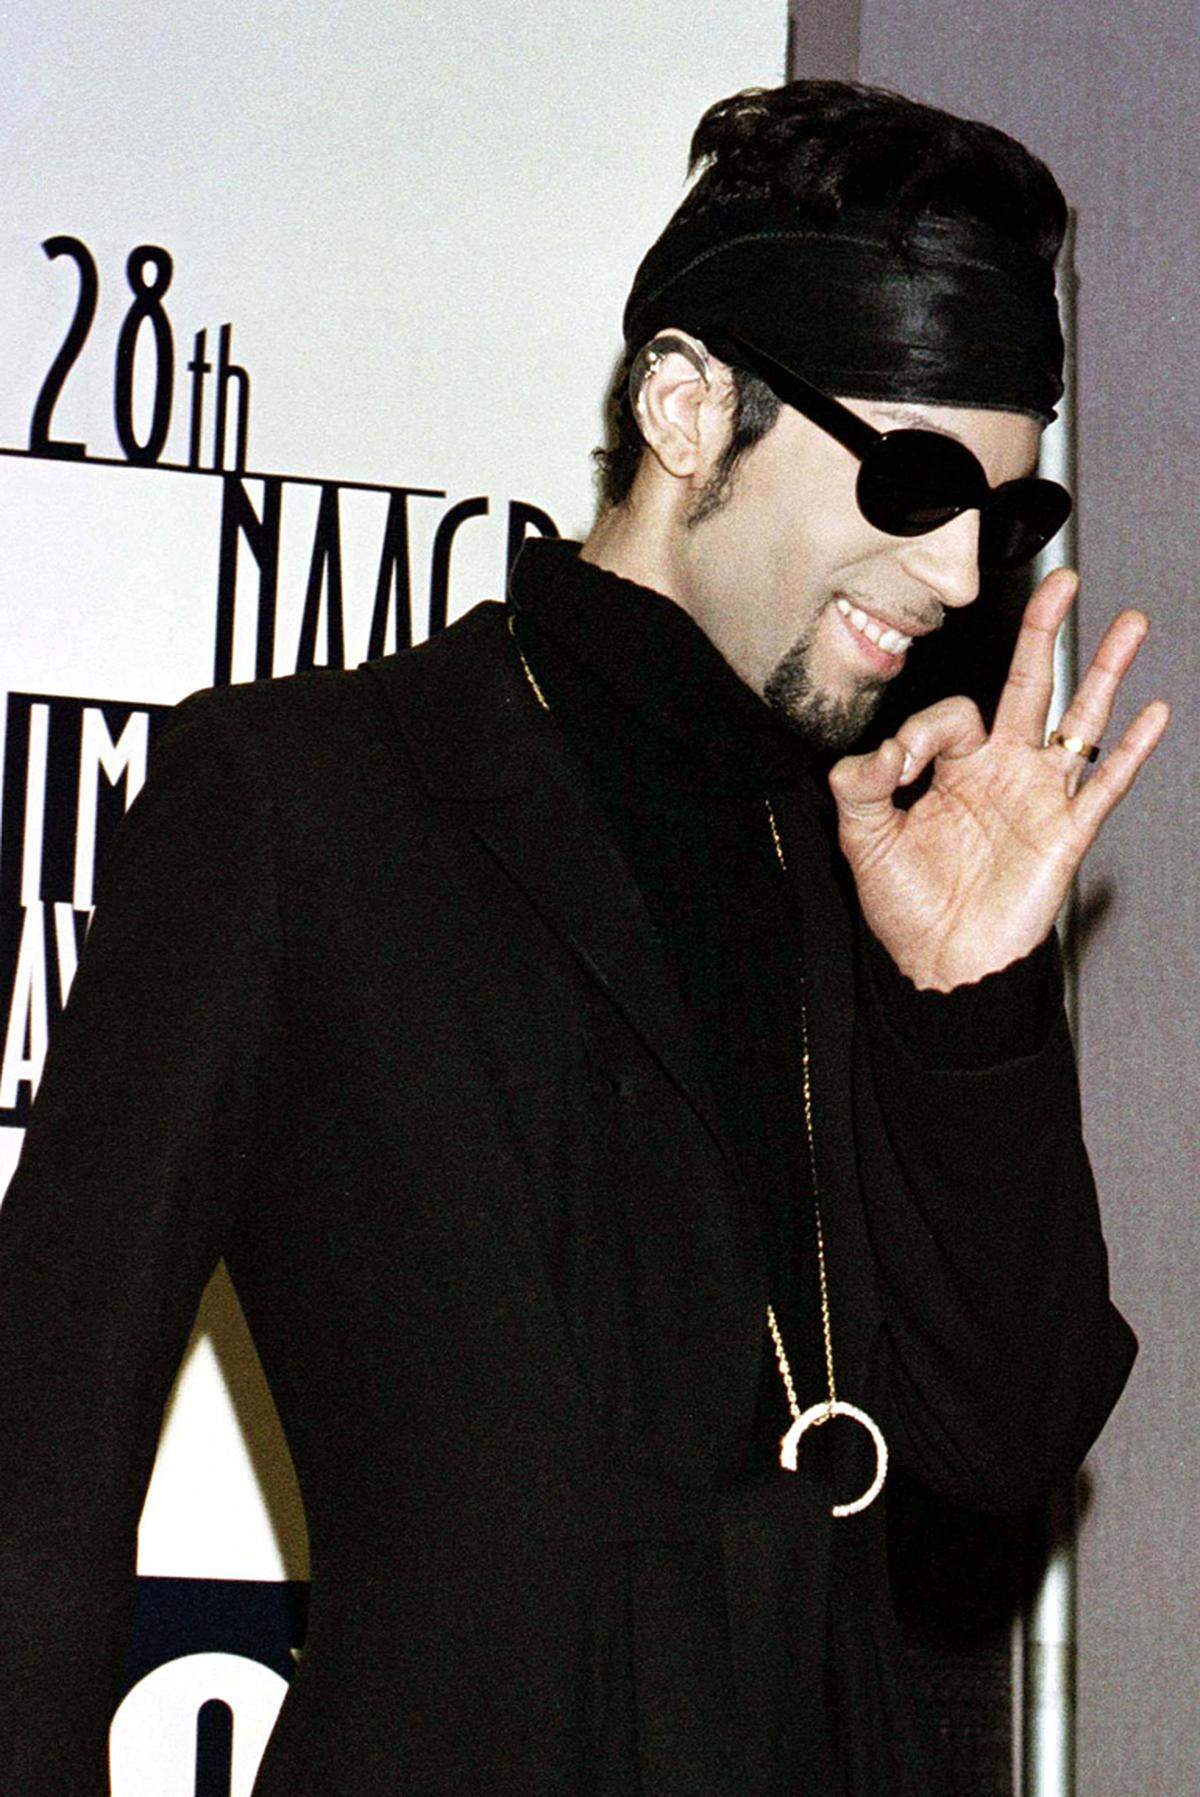 Mit seiner "Musicology"-Welttournee verdiente er 87 Millionen Dollar und damit den Titel als "Konzertkönig" des Jahres noch vor Celine Dion und Madonna. 2006 schaffte er es mit "3121" nach 17 Jahren wieder auf Platz eins der amerikanischen Hitparade.